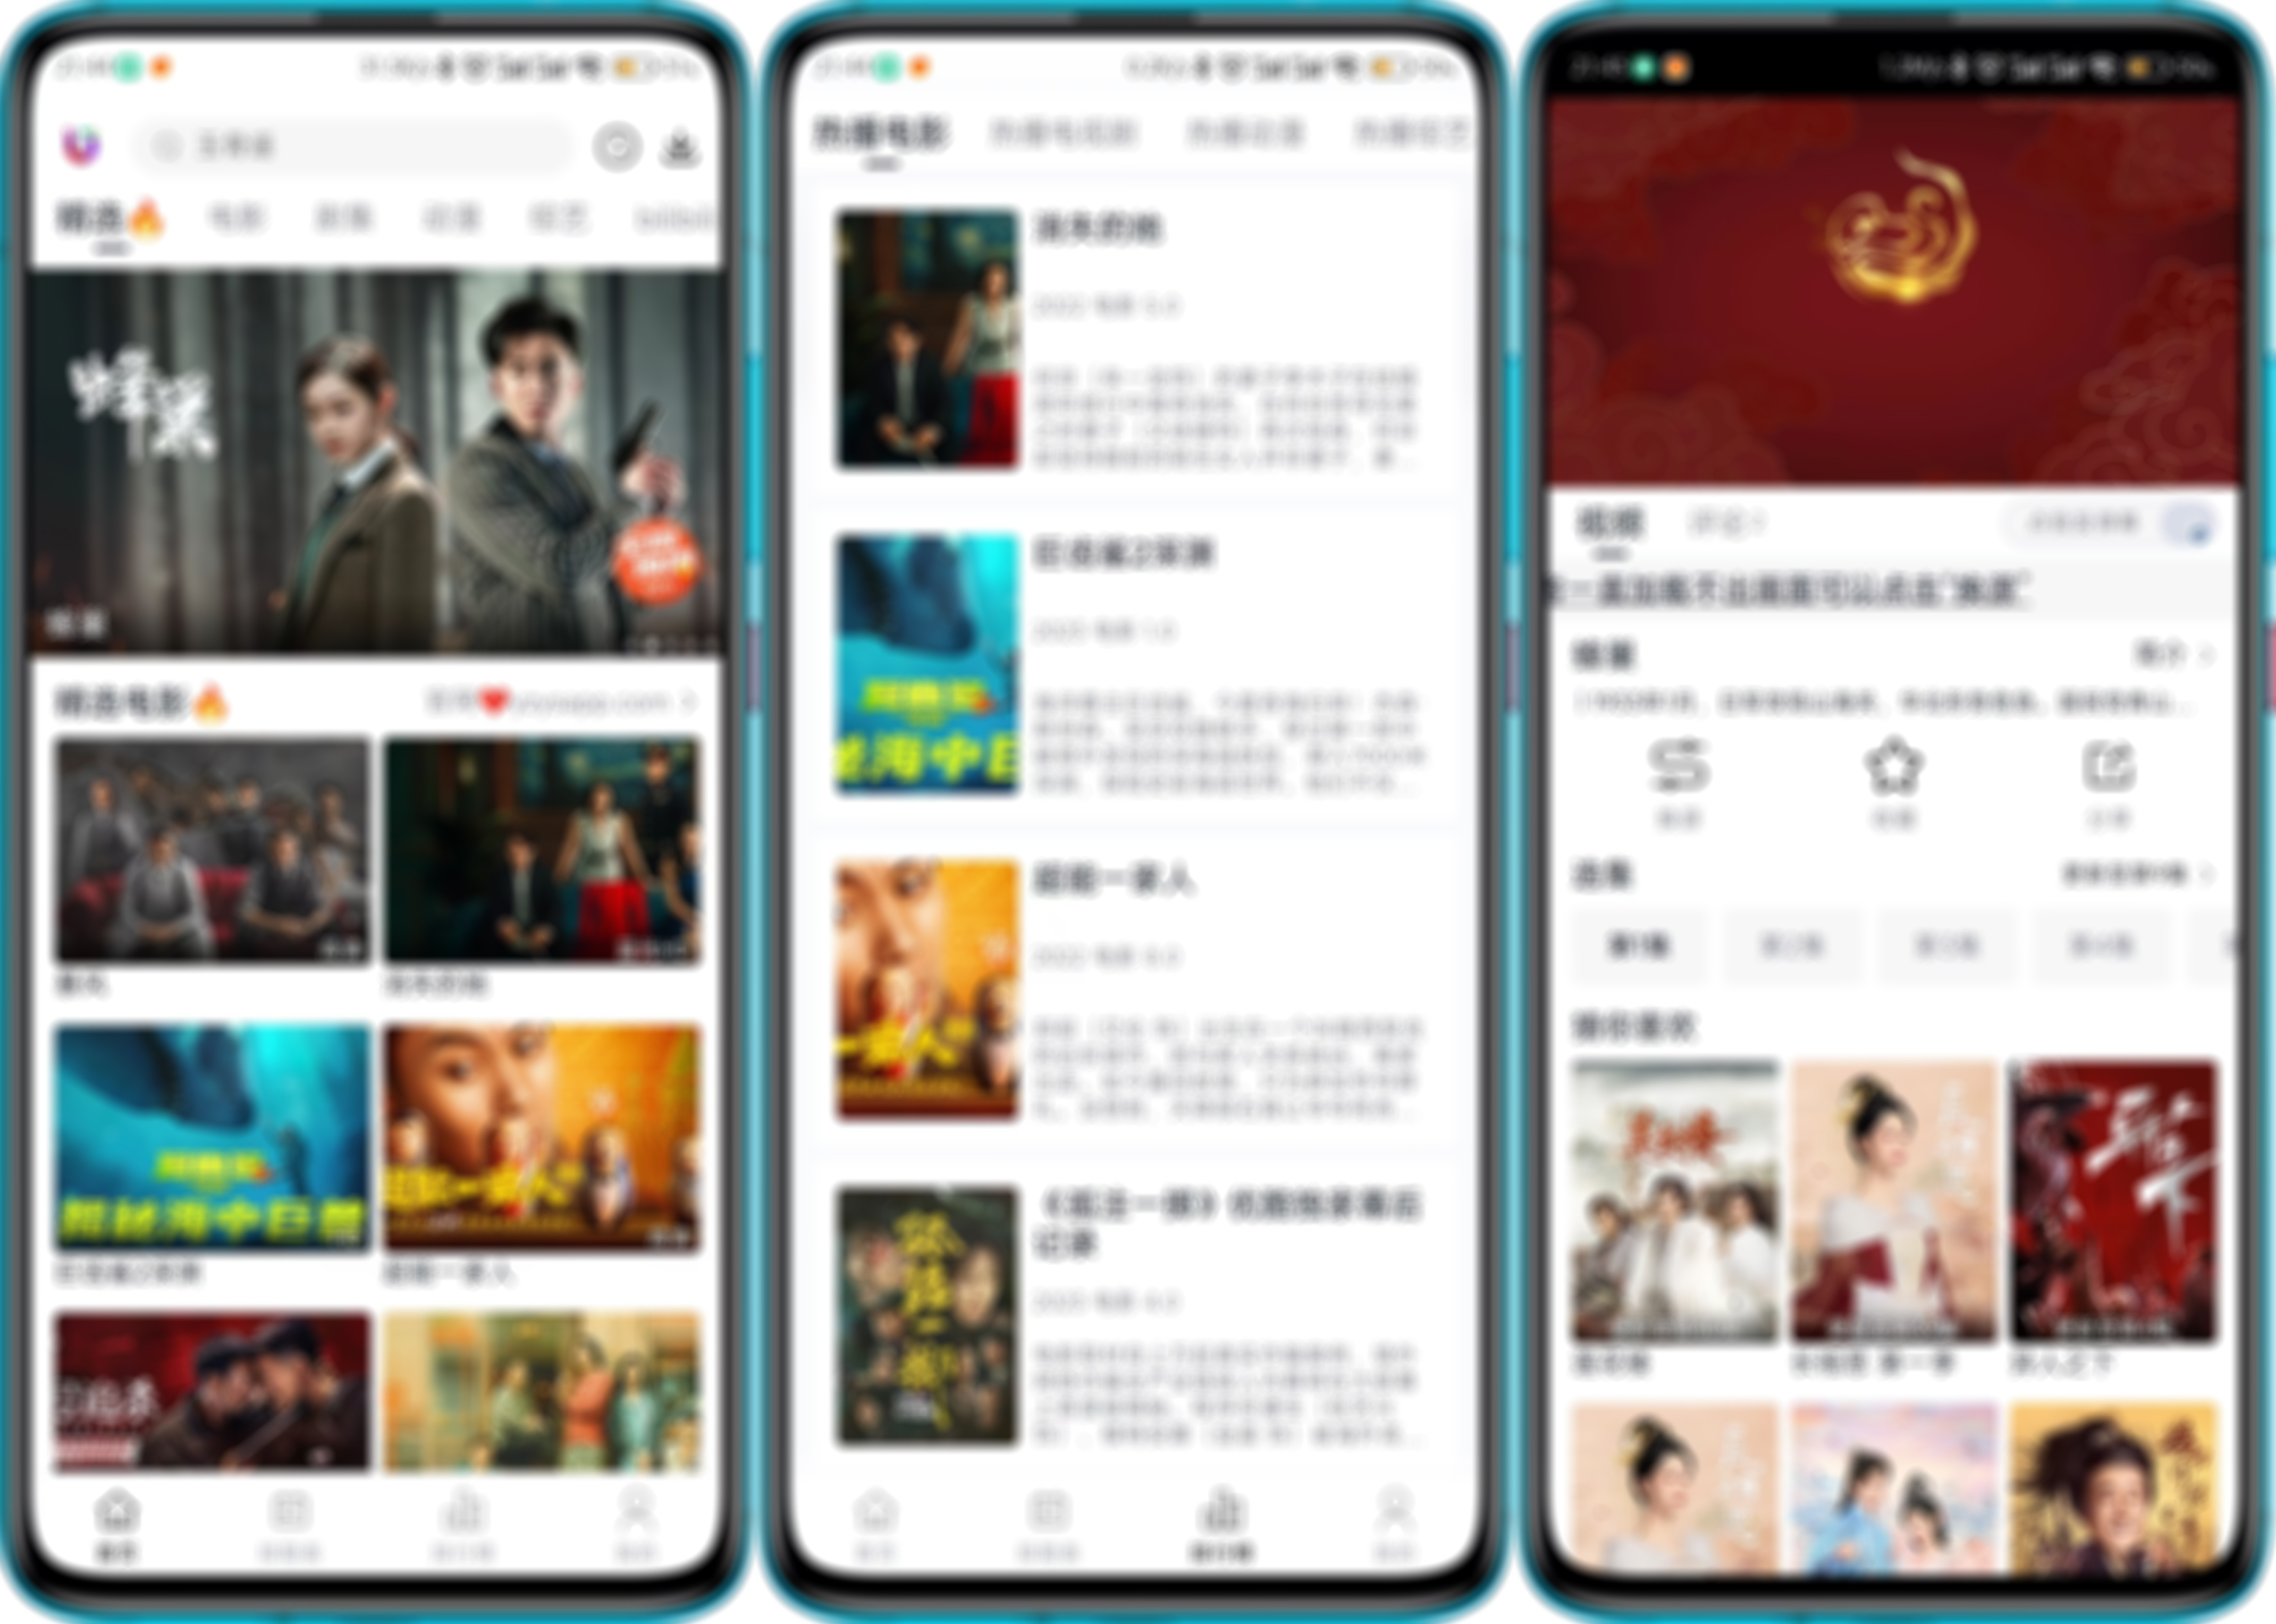 柚子视频官方下载-柚子视频 app 最新版本免费下载-应用宝官网